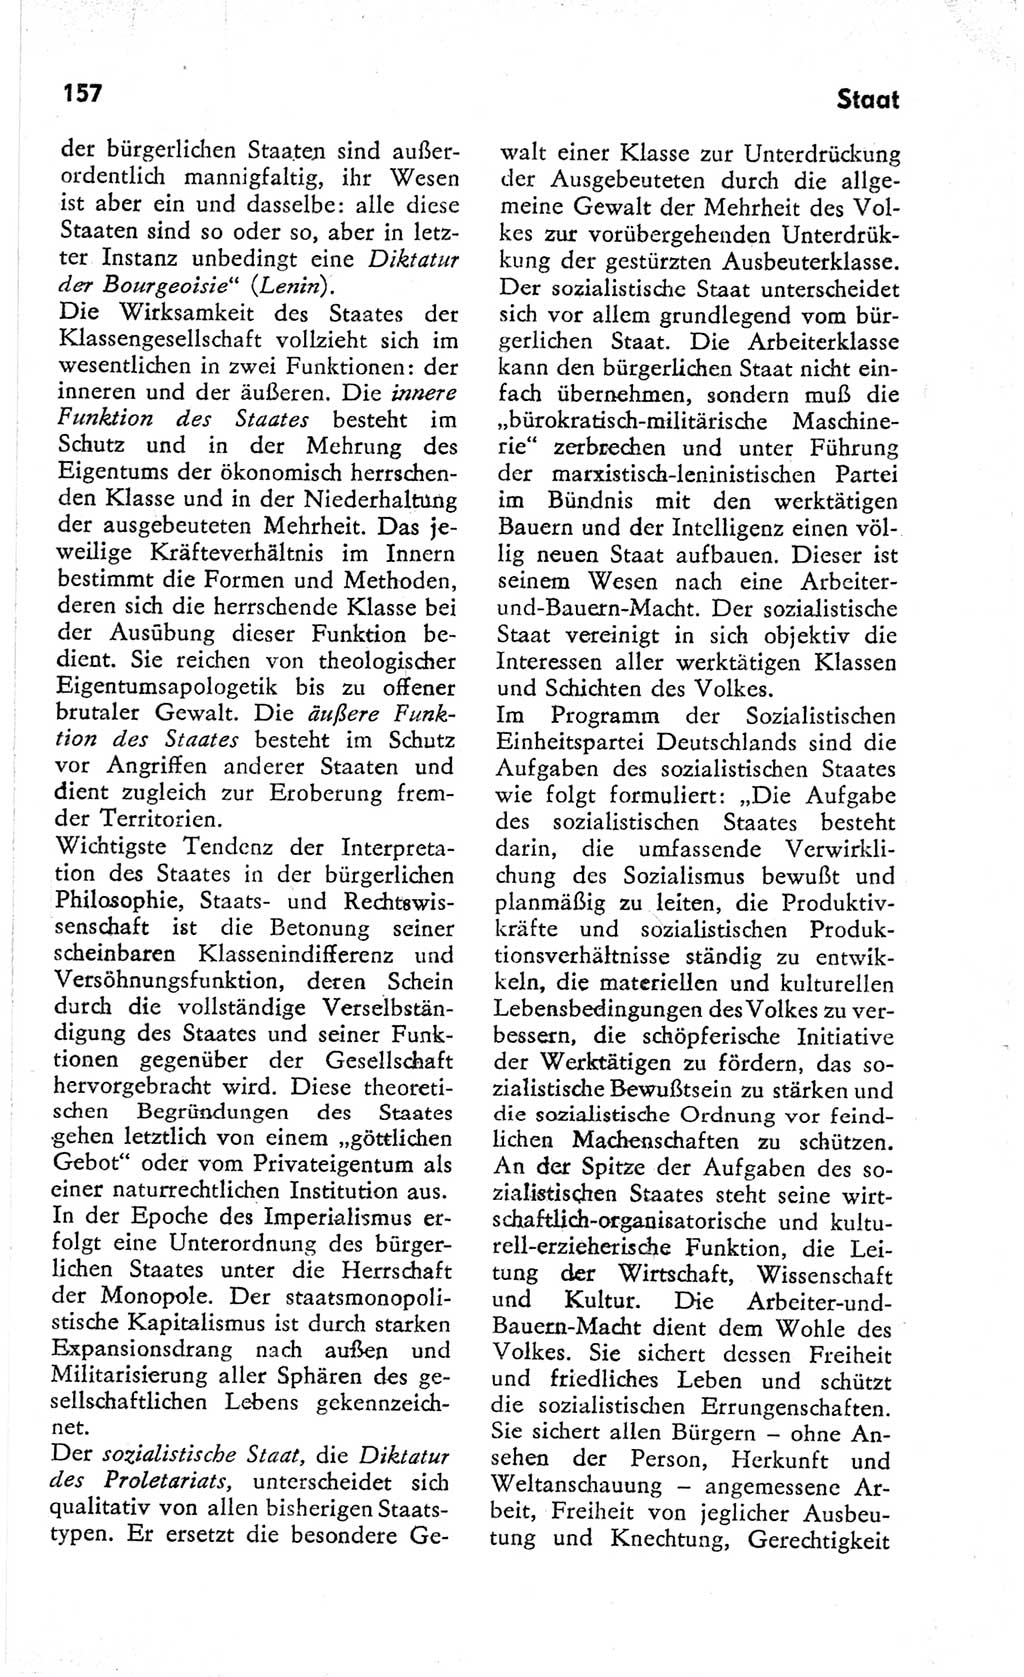 Kleines Wörterbuch der marxistisch-leninistischen Philosophie [Deutsche Demokratische Republik (DDR)] 1966, Seite 157 (Kl. Wb. ML Phil. DDR 1966, S. 157)